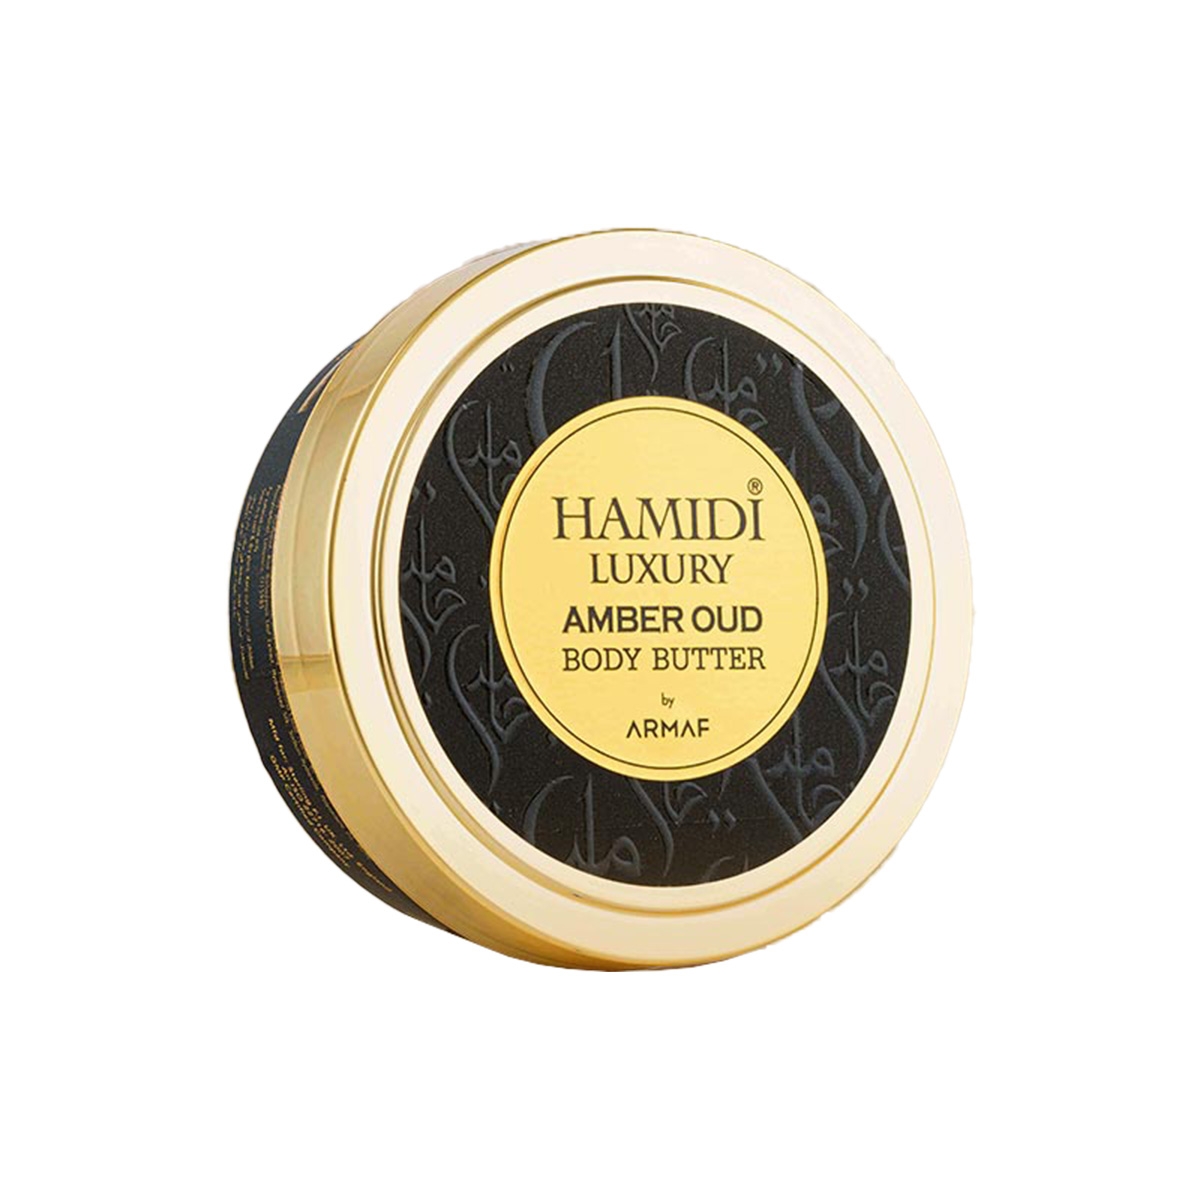 Amber Oud Burro per Corpo Hamidi Oud & Perfumes Perfumes, Cura Del Corpo, Arada Perfumes